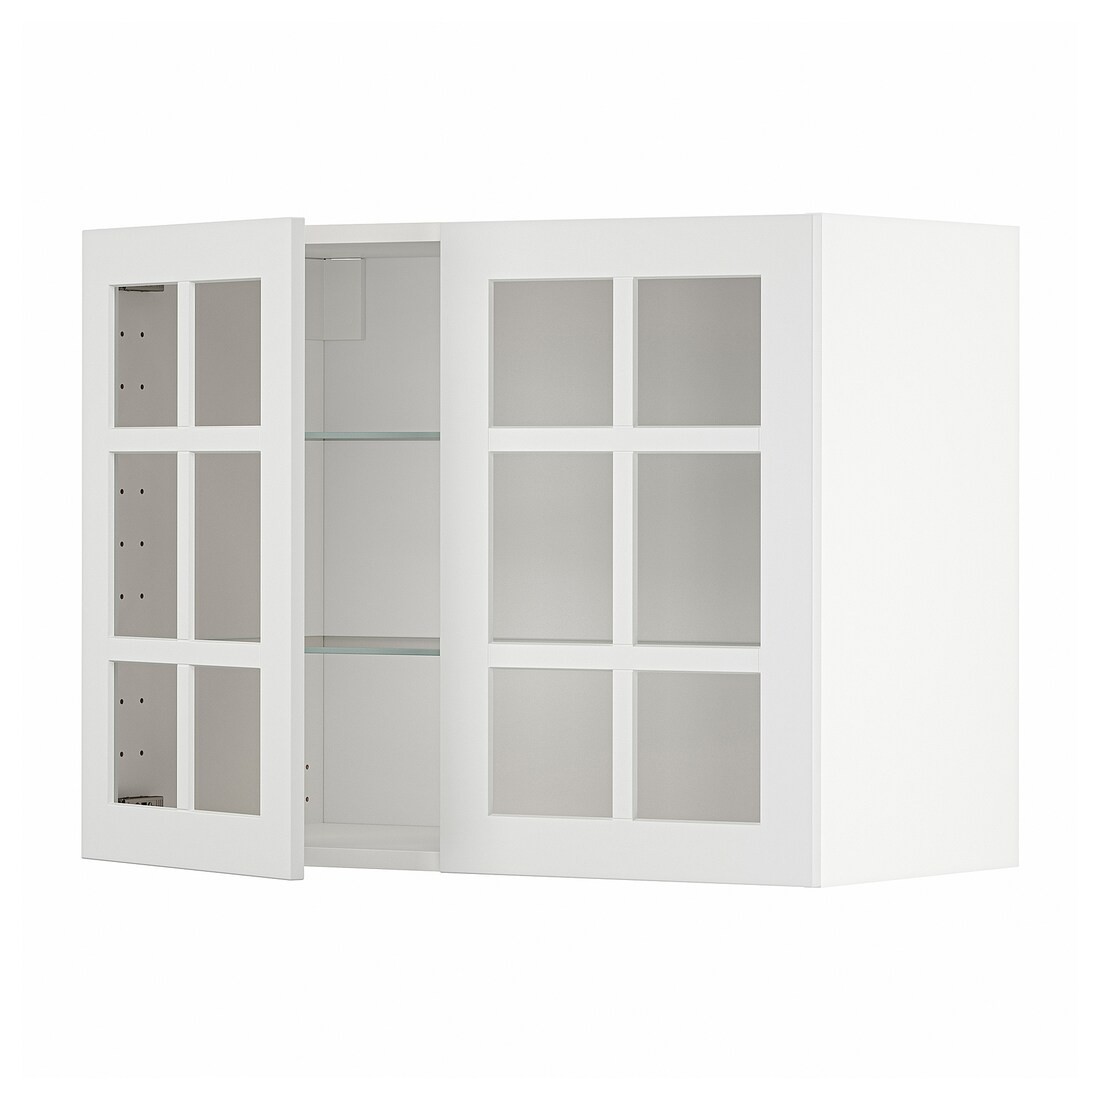 METOD МЕТОД Навесной шкаф, белый / Stensund белый, 80x60 см